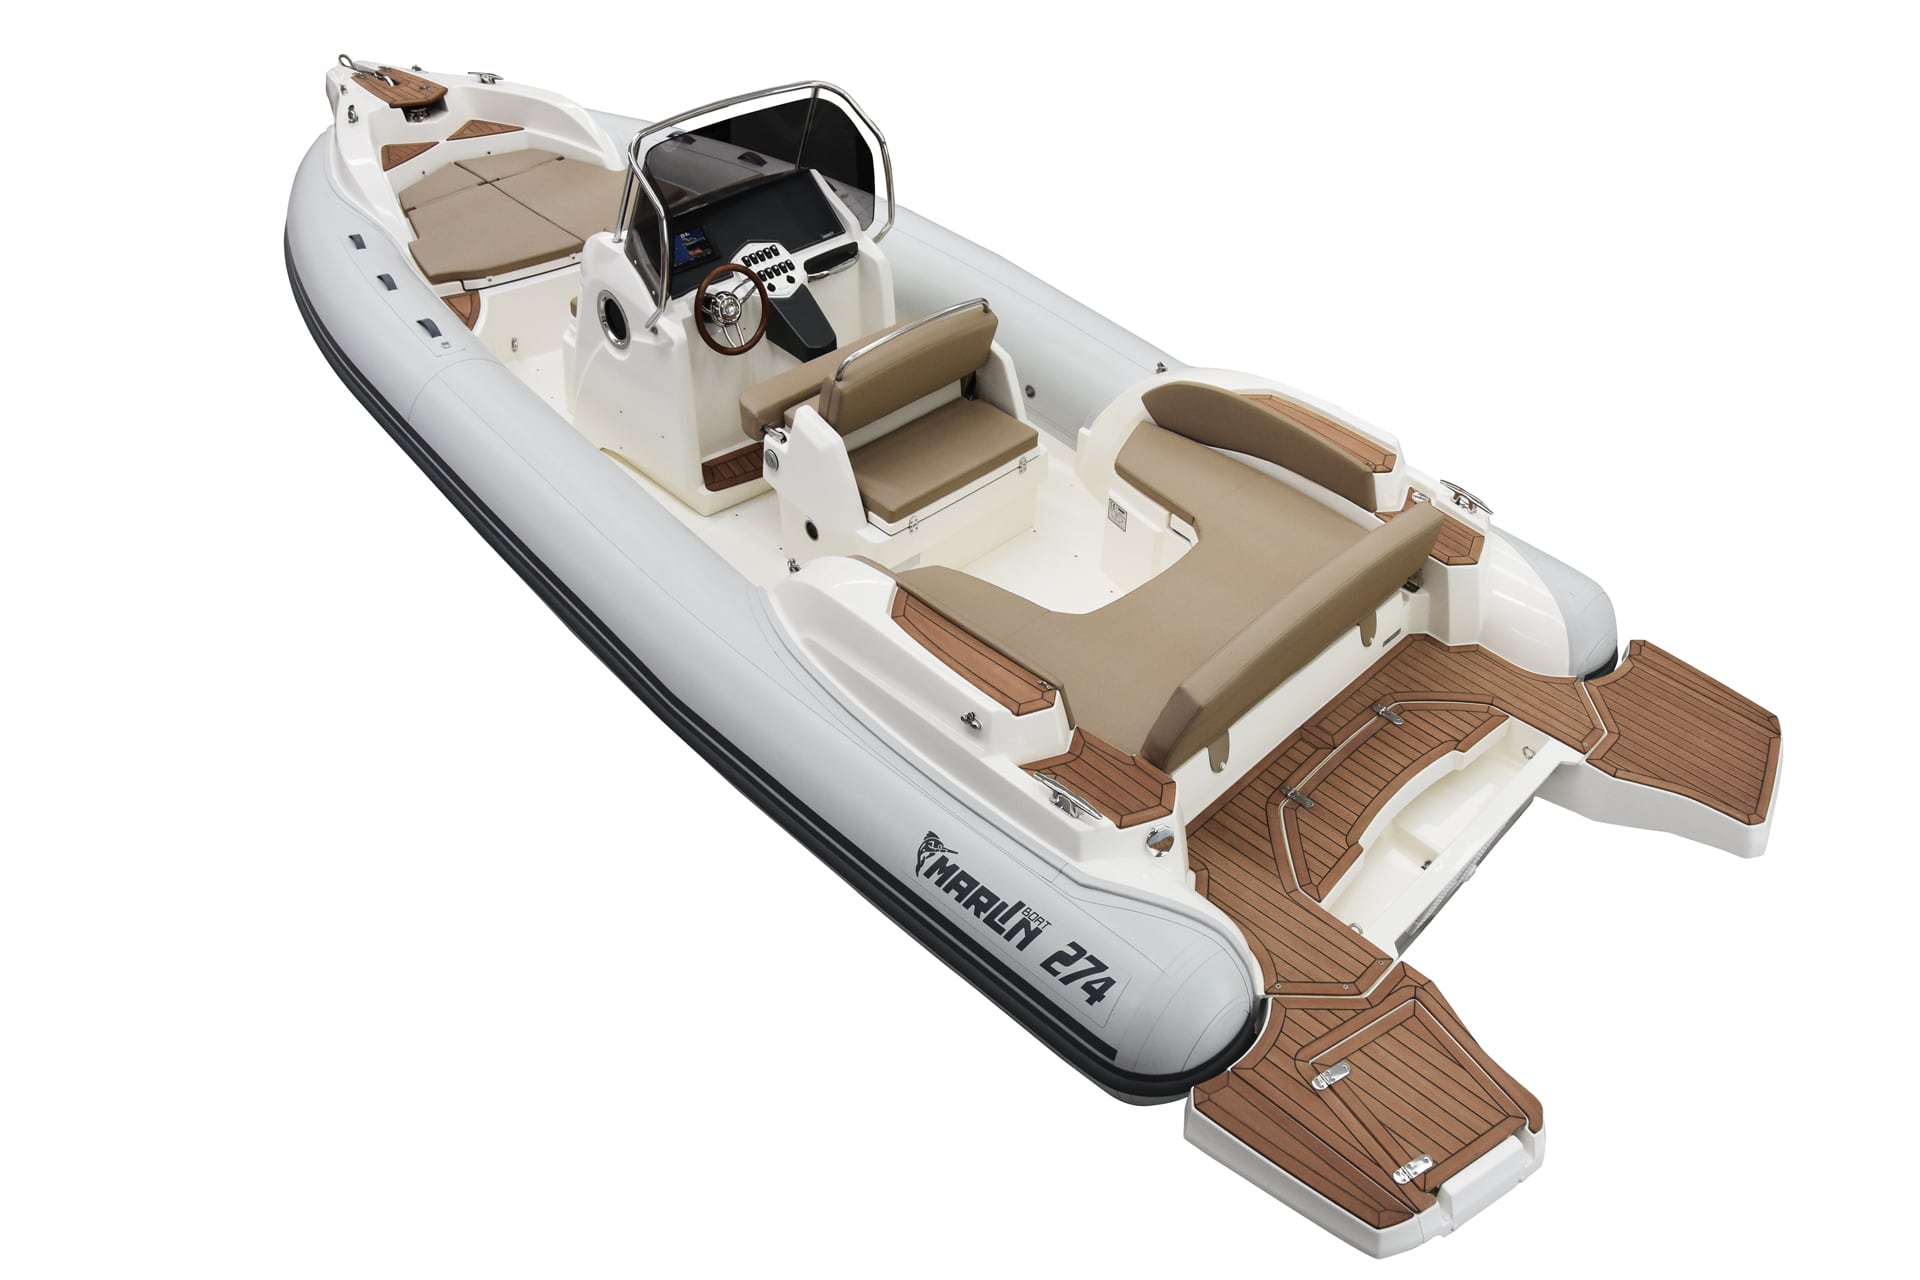 Marlin Boat - Gommone Fuoribordo Modello 274